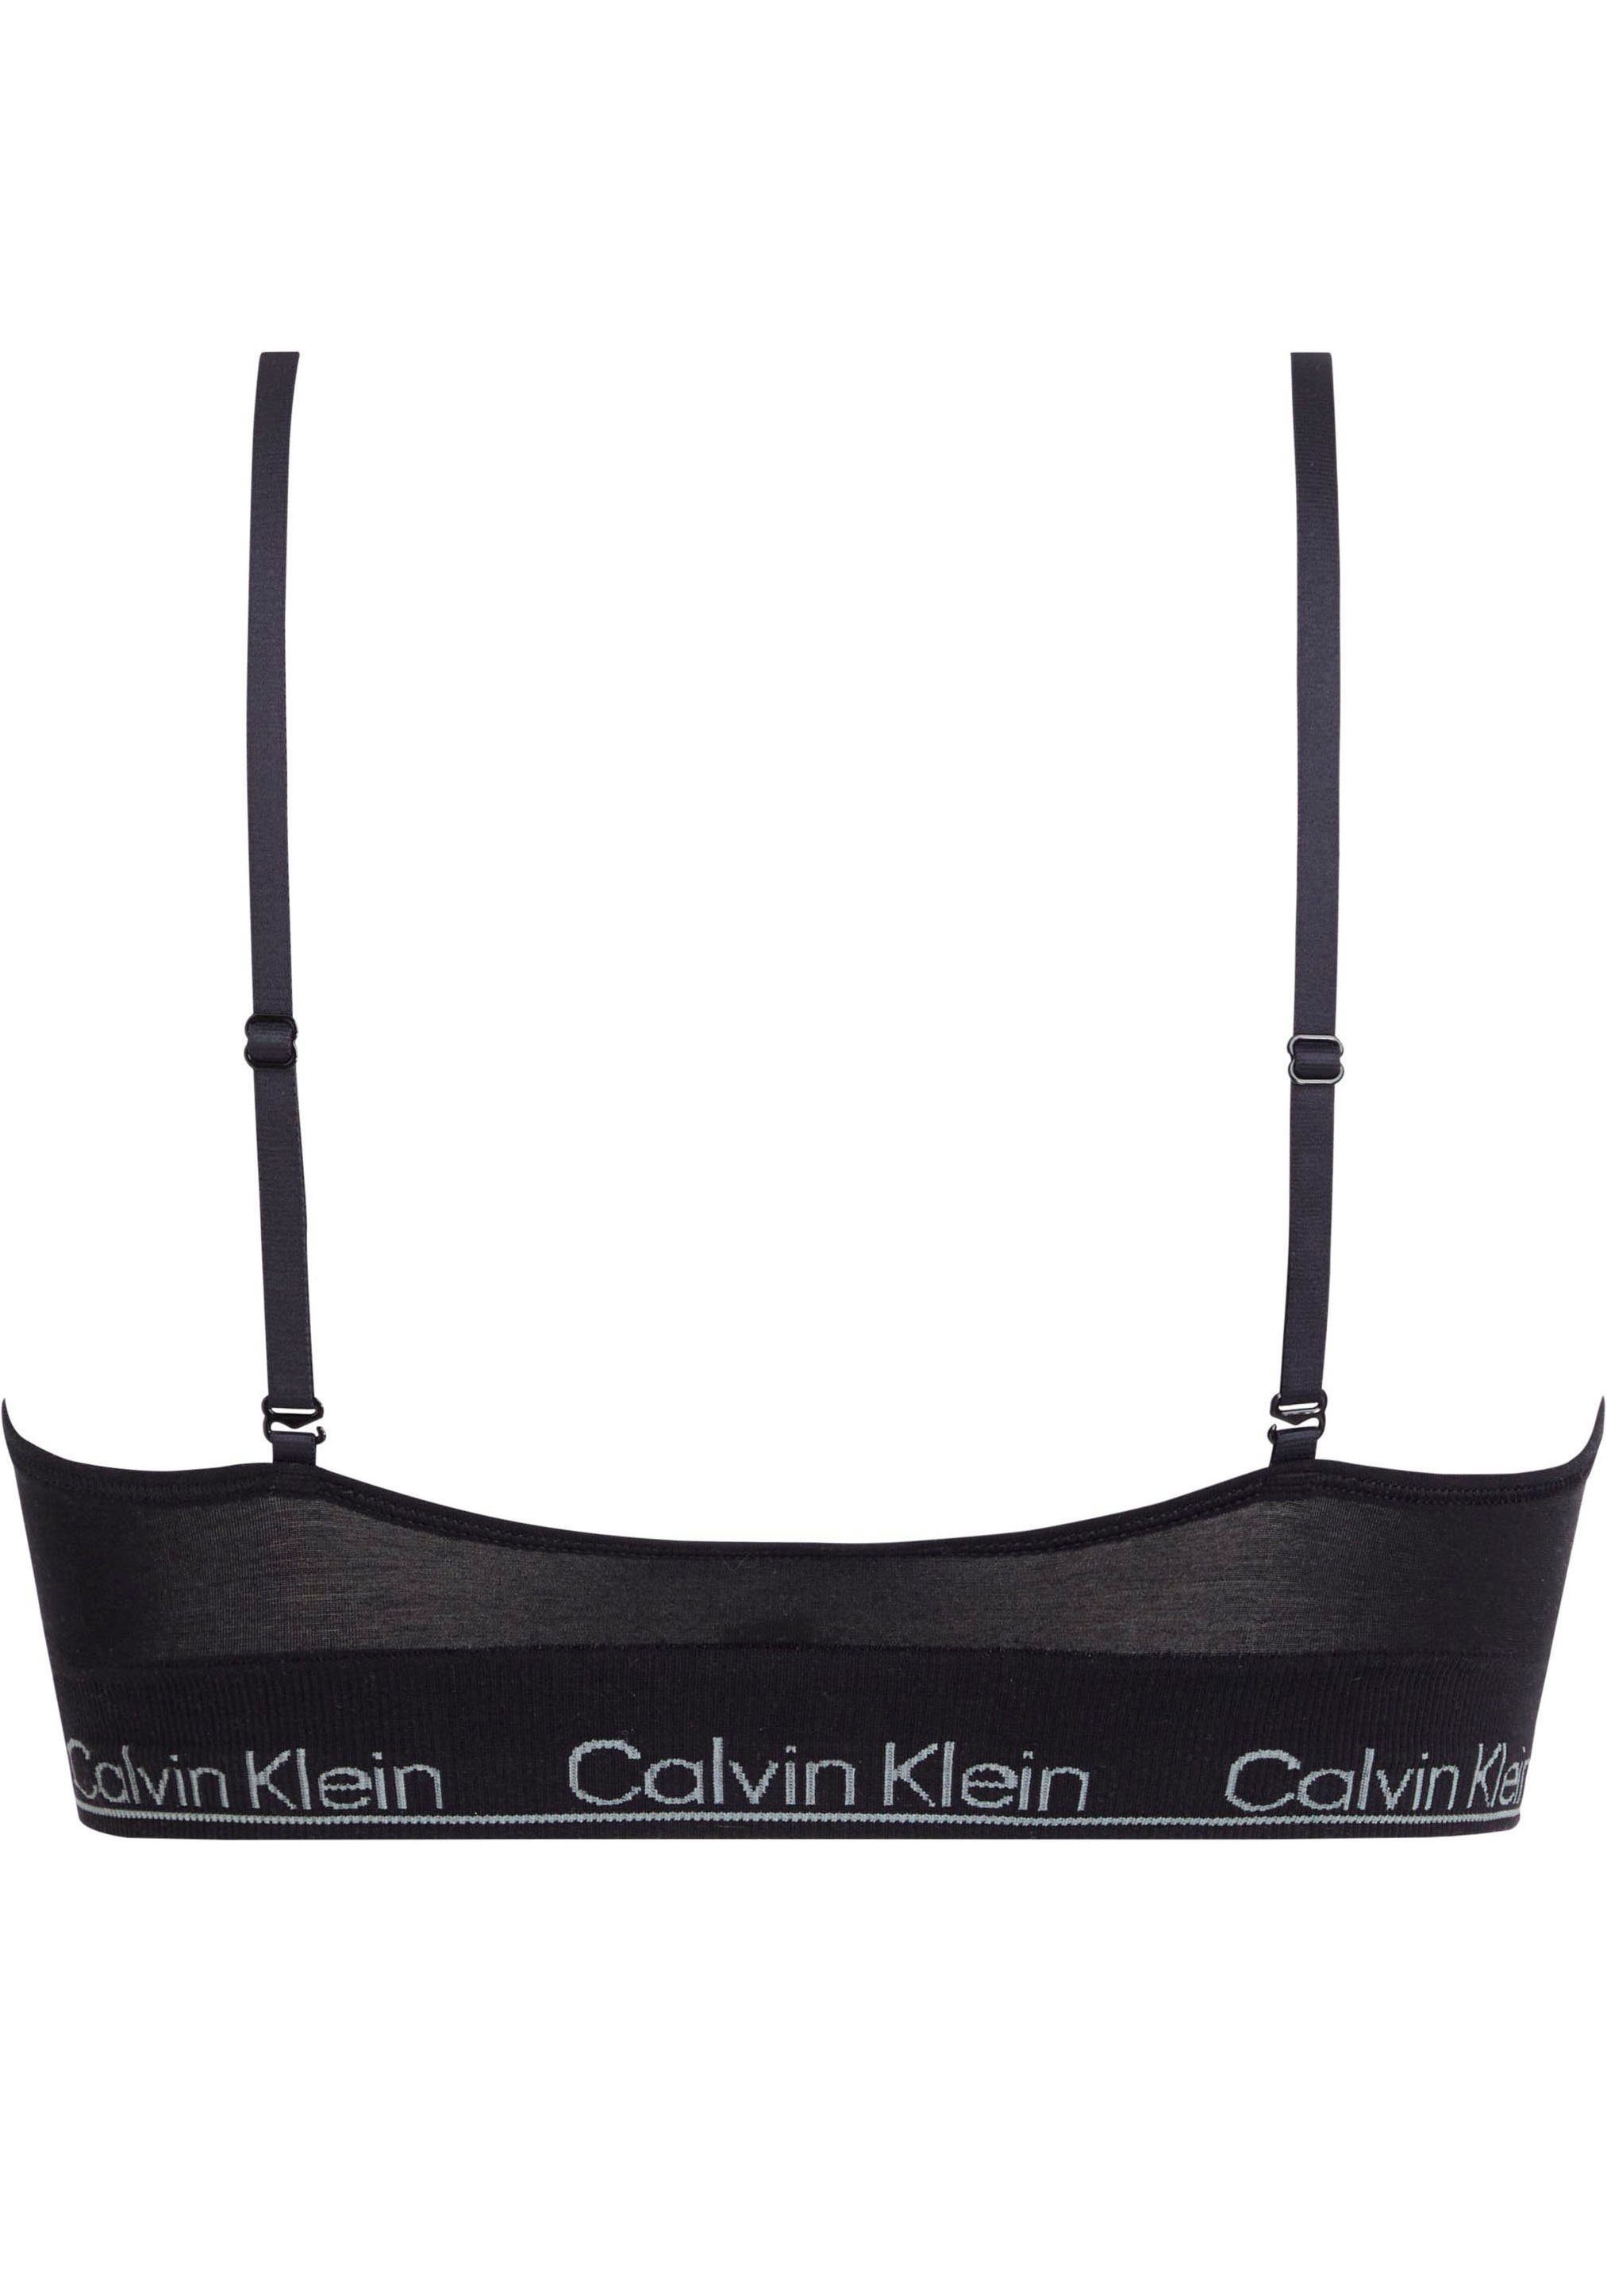 LINED TRIANGLE mit Triangel-BH CK-Logoschriftzug Underwear LGHT Calvin Klein schwarz